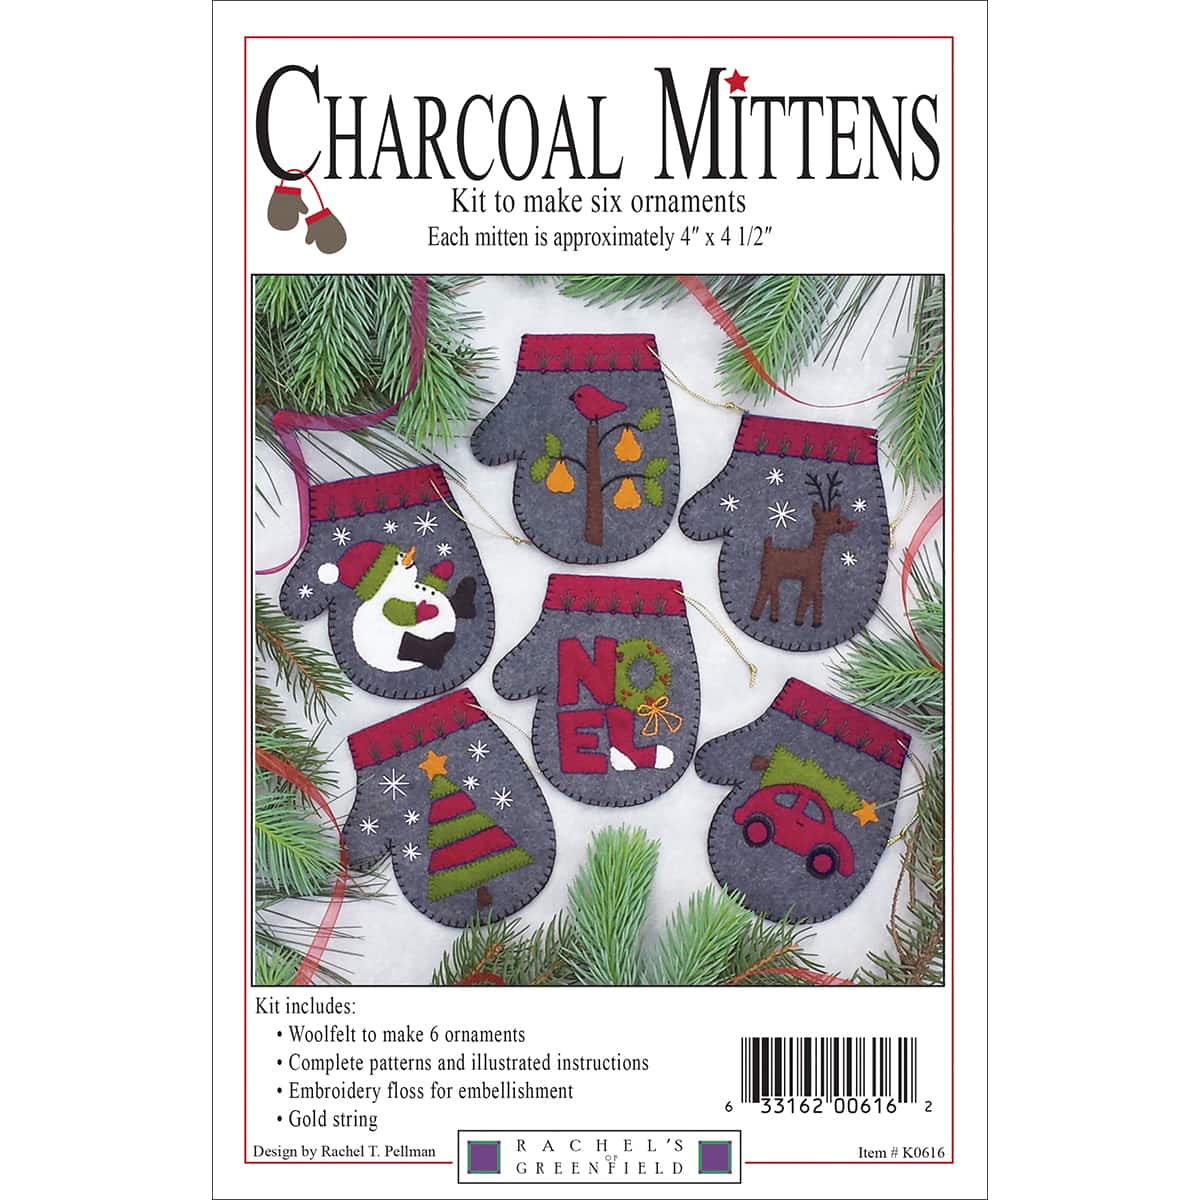 Rachel&#x27;s of Greenfield Charcoal Mittens Felt Ornament Kit